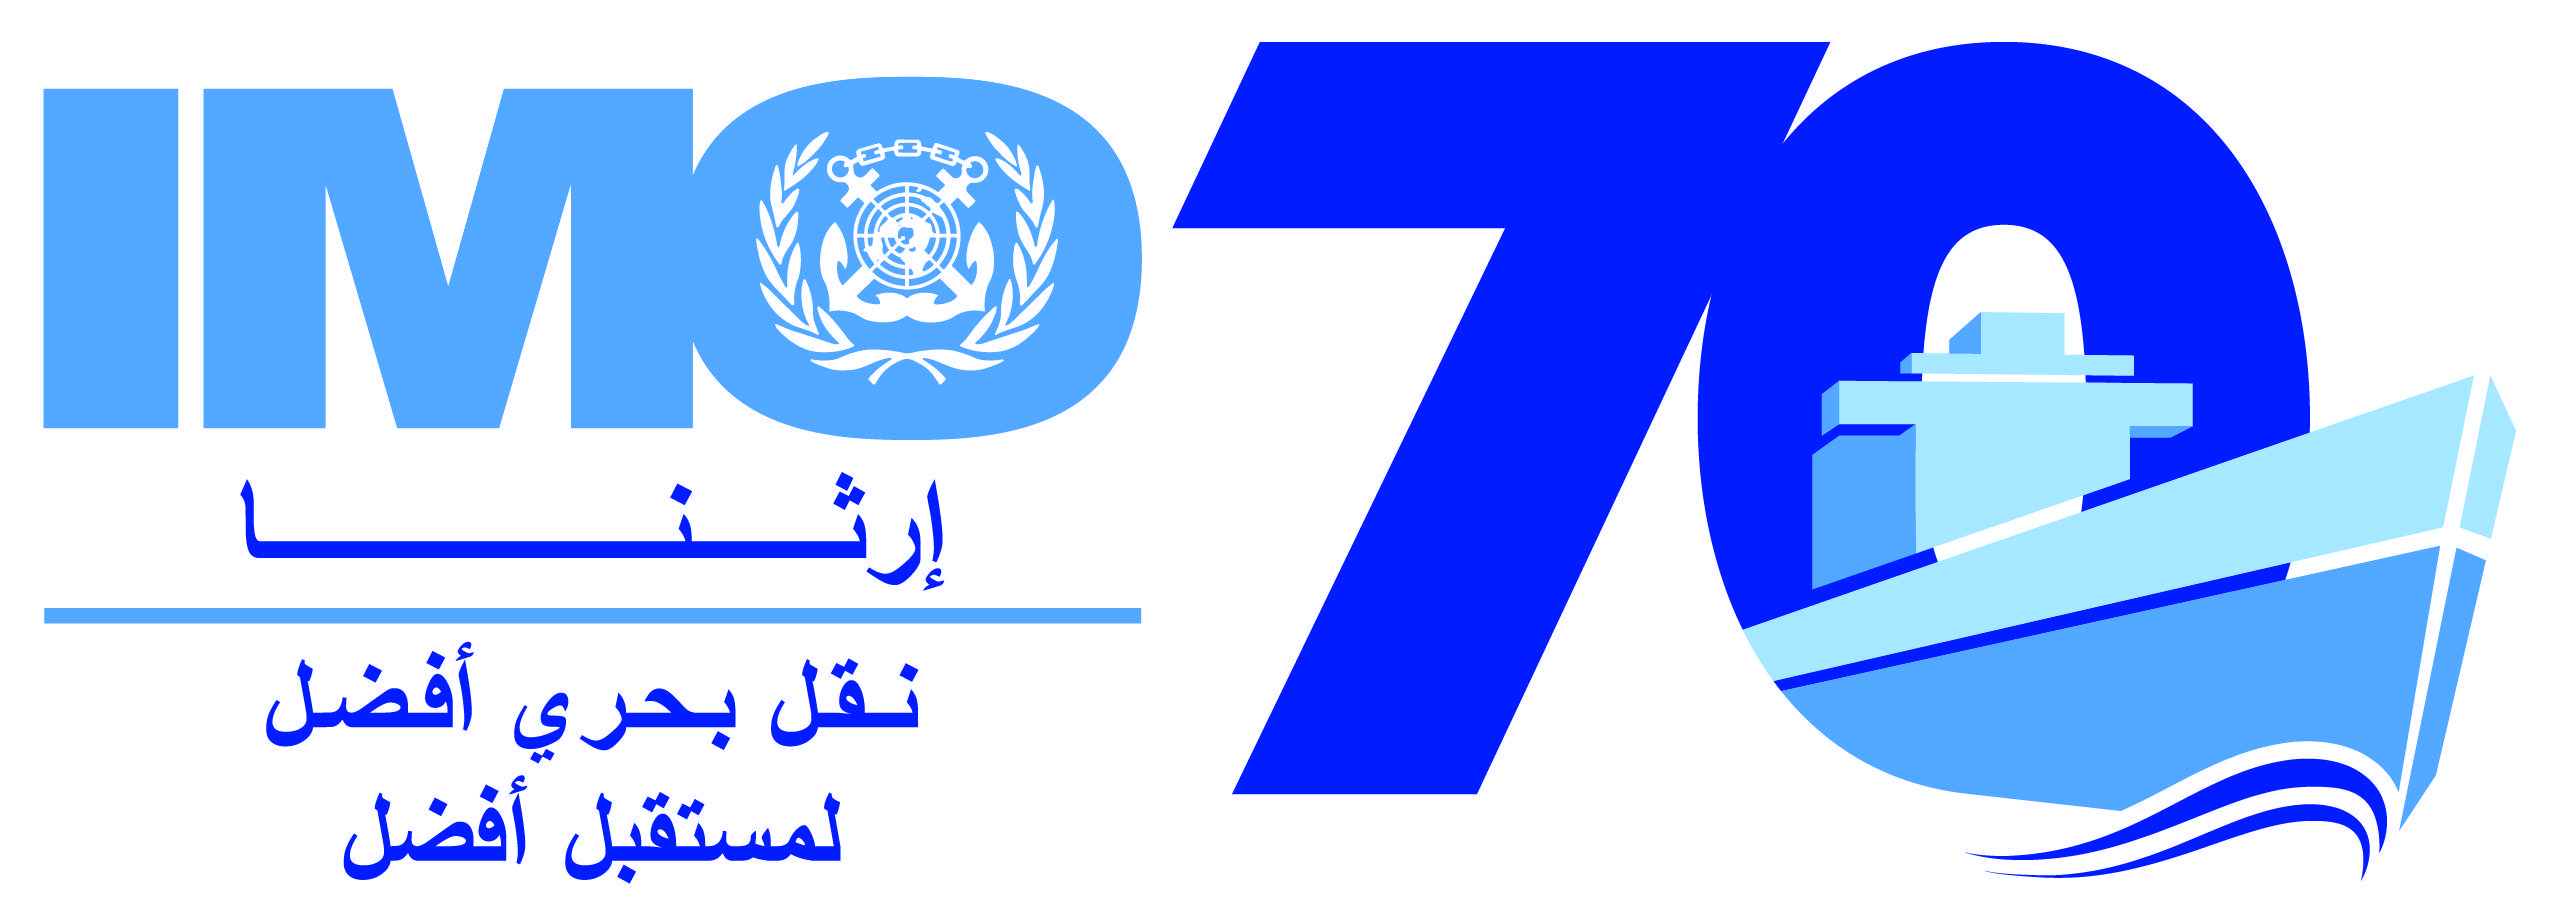 IMO Logo - World Maritime Day 2018 logos